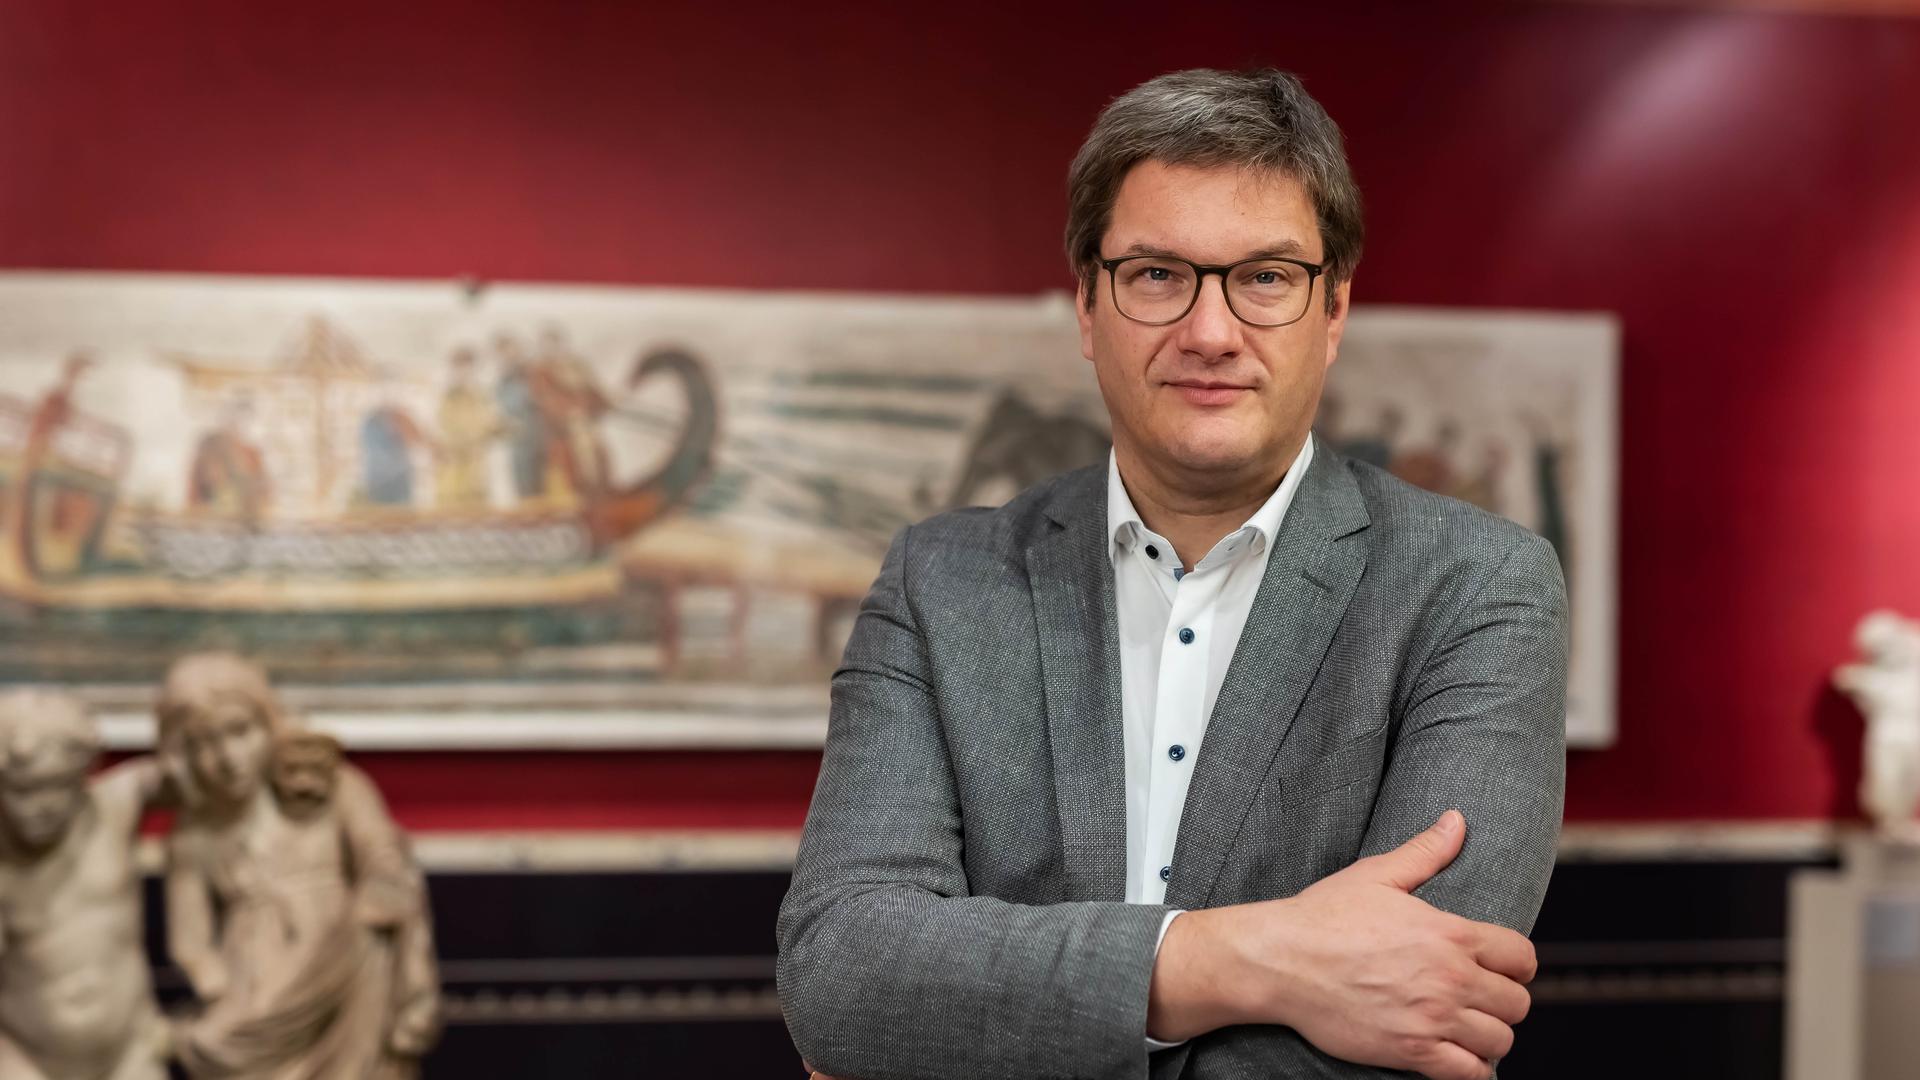 Museumsdirektor in seiner Geburtsstadt Karlsruhe zu sein: Das ist ein wahrer Traumjob für Eckart Köhne, den Chef des Badischen Landesmuseums im Schloss. 